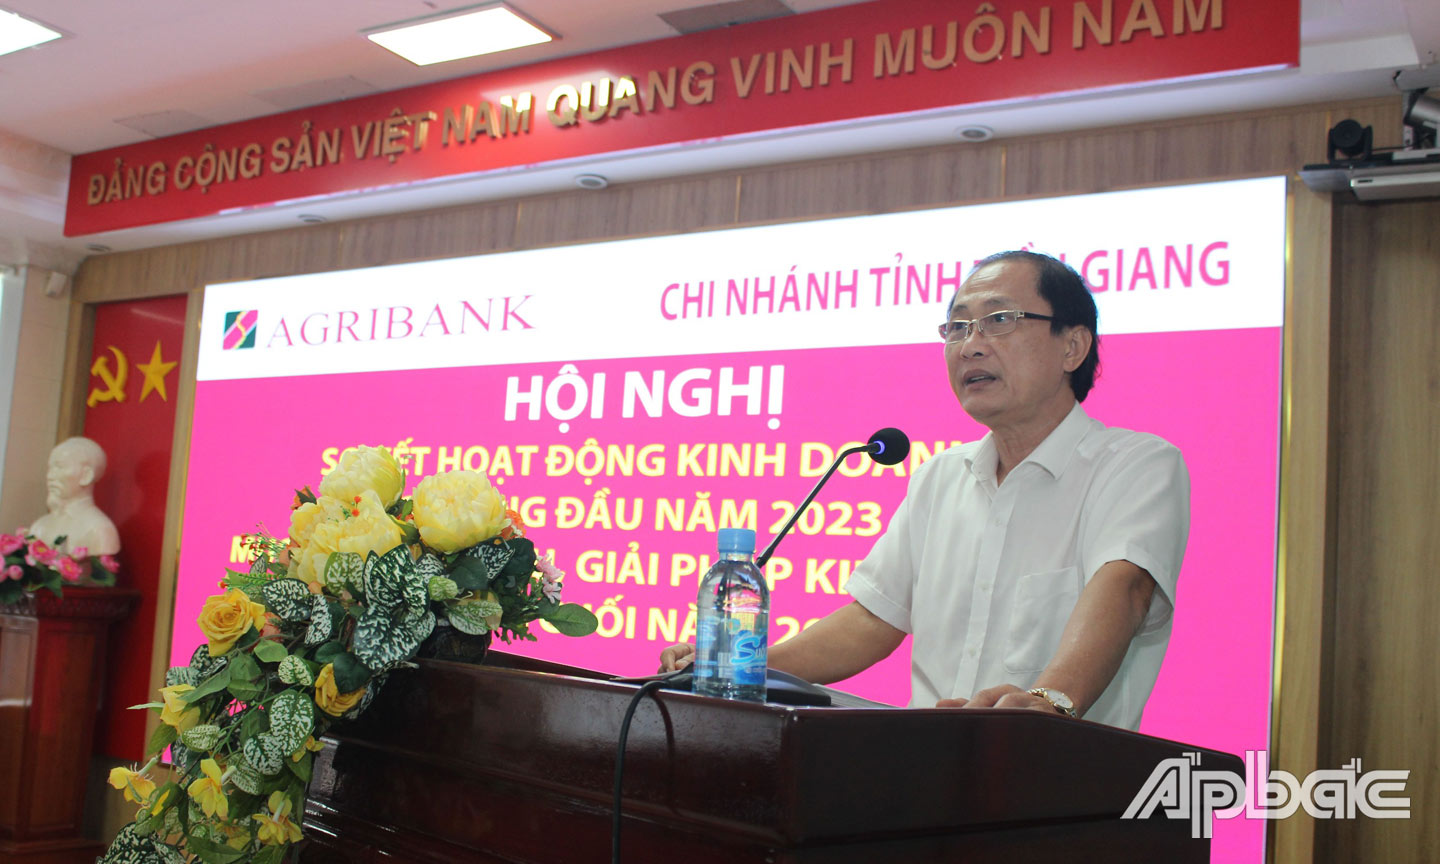 Agribank Tiền Giang: Tổng nguồn vốn tăng trưởng 6,4% so với đầu năm ...